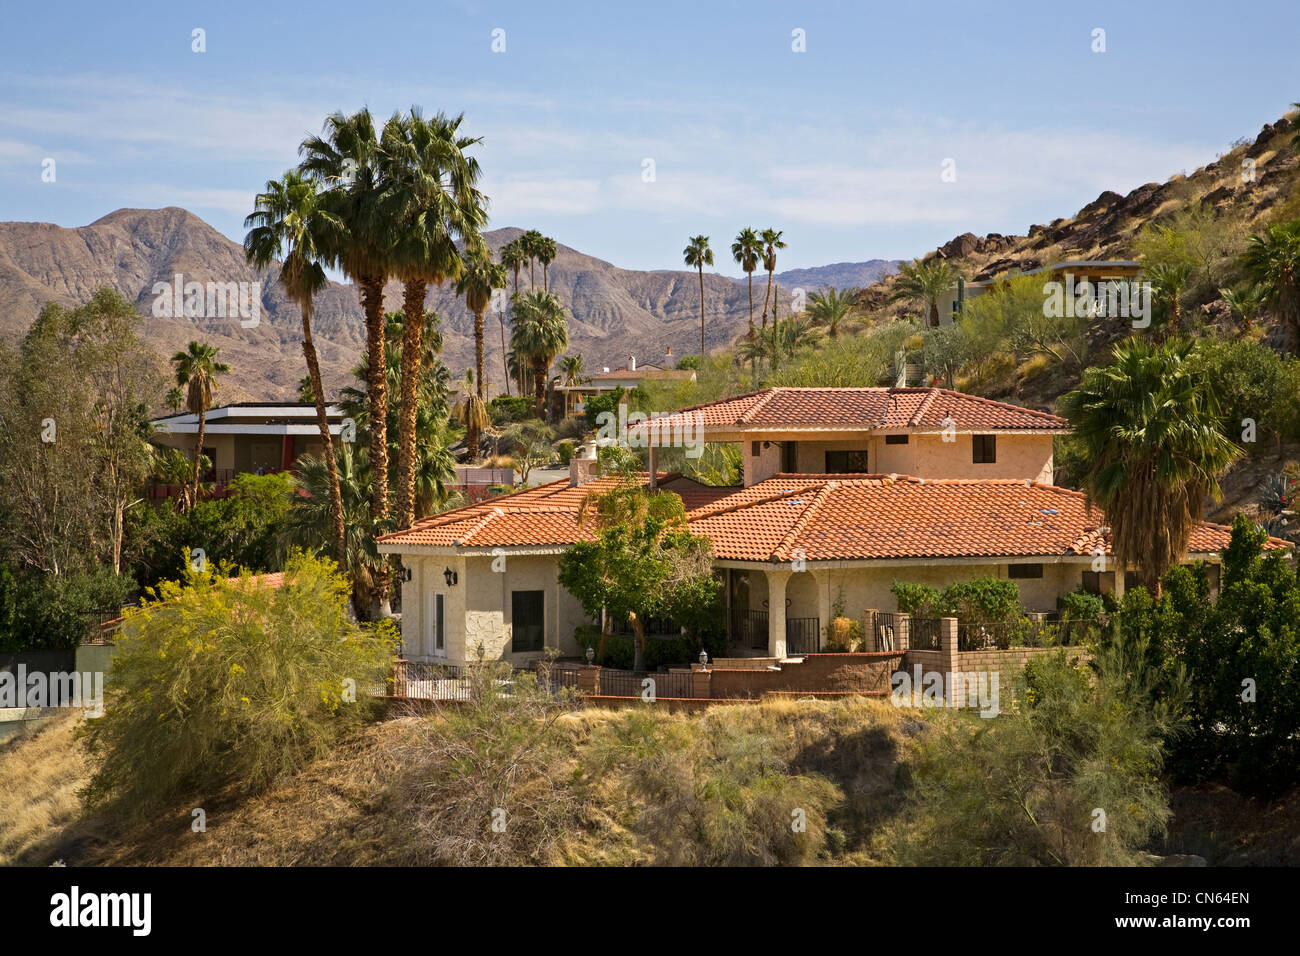 Cher maisons de l'architecture de la Mission de la Californie à Palm Springs, Californie Banque D'Images